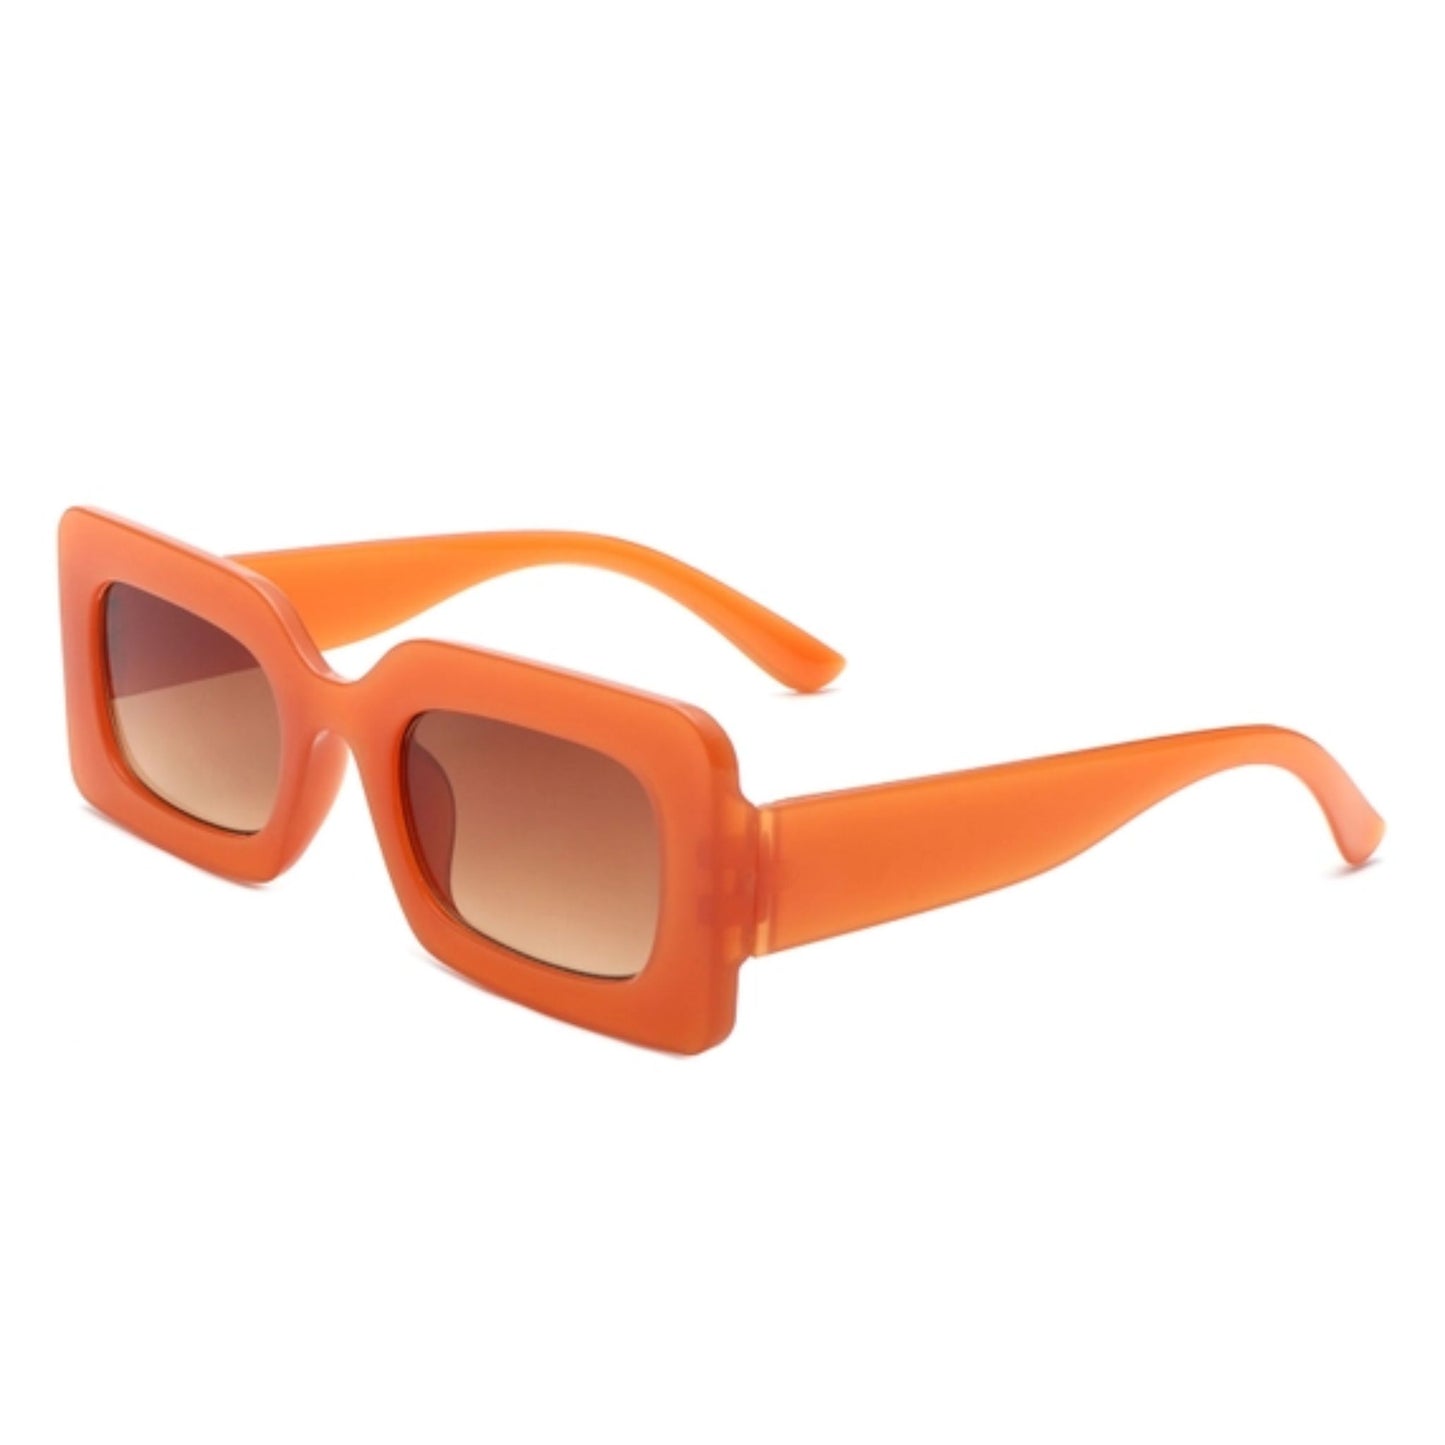 Bright Rectangular Sunglasses